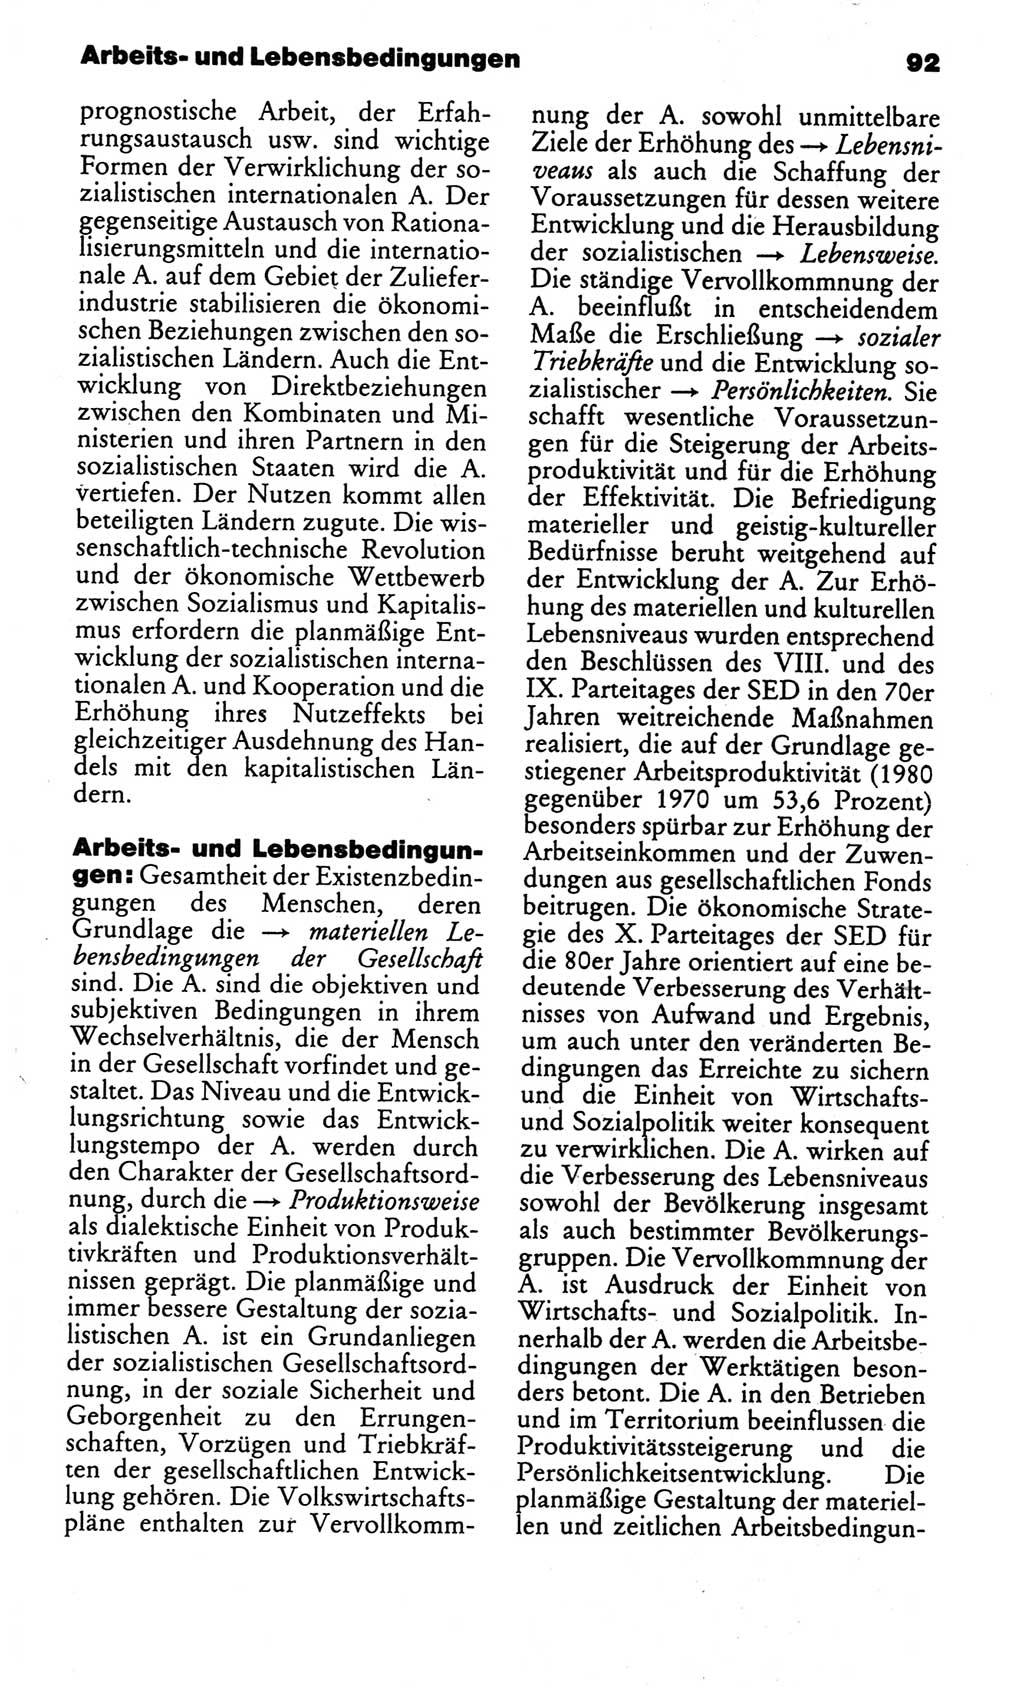 Kleines politisches Wörterbuch [Deutsche Demokratische Republik (DDR)] 1986, Seite 92 (Kl. pol. Wb. DDR 1986, S. 92)